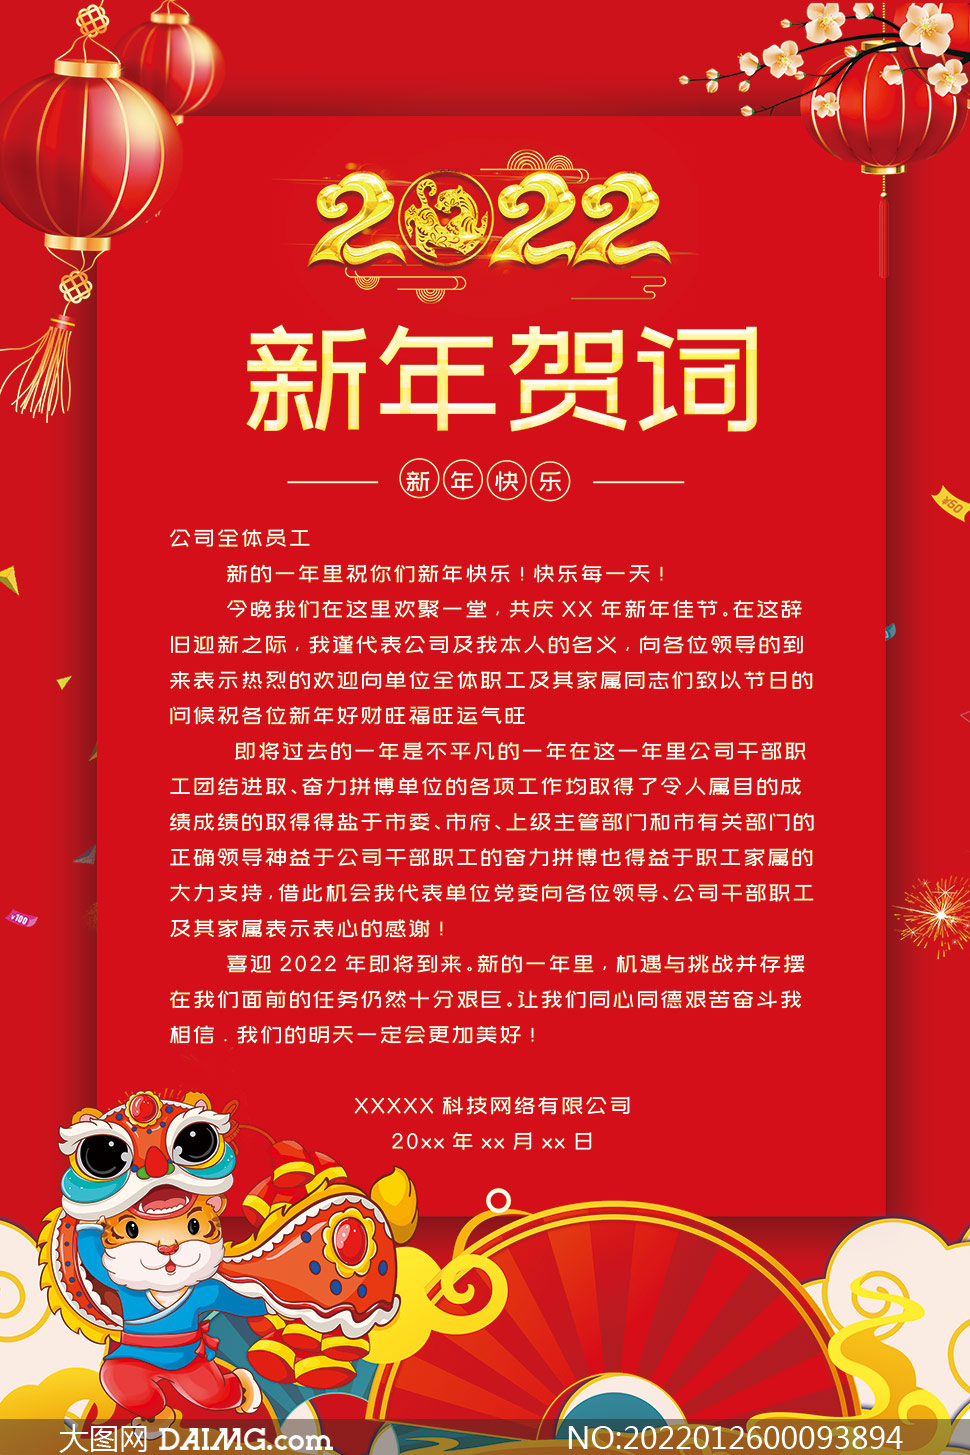 红色喜庆2022新年贺词宣传海报PSD素材